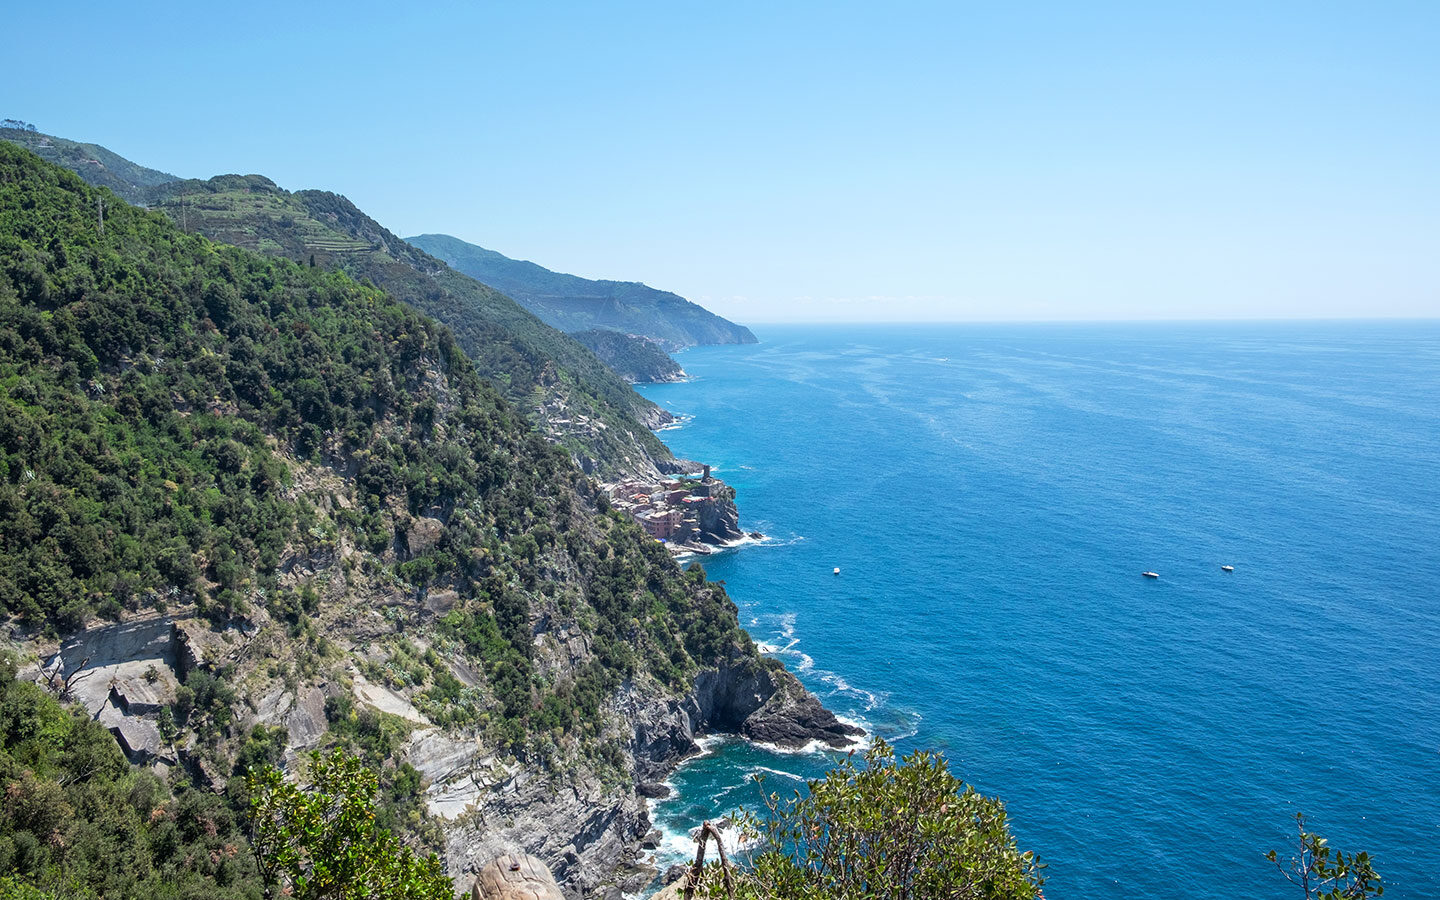 Looking along the Cinque Terre coast towards Vernazza